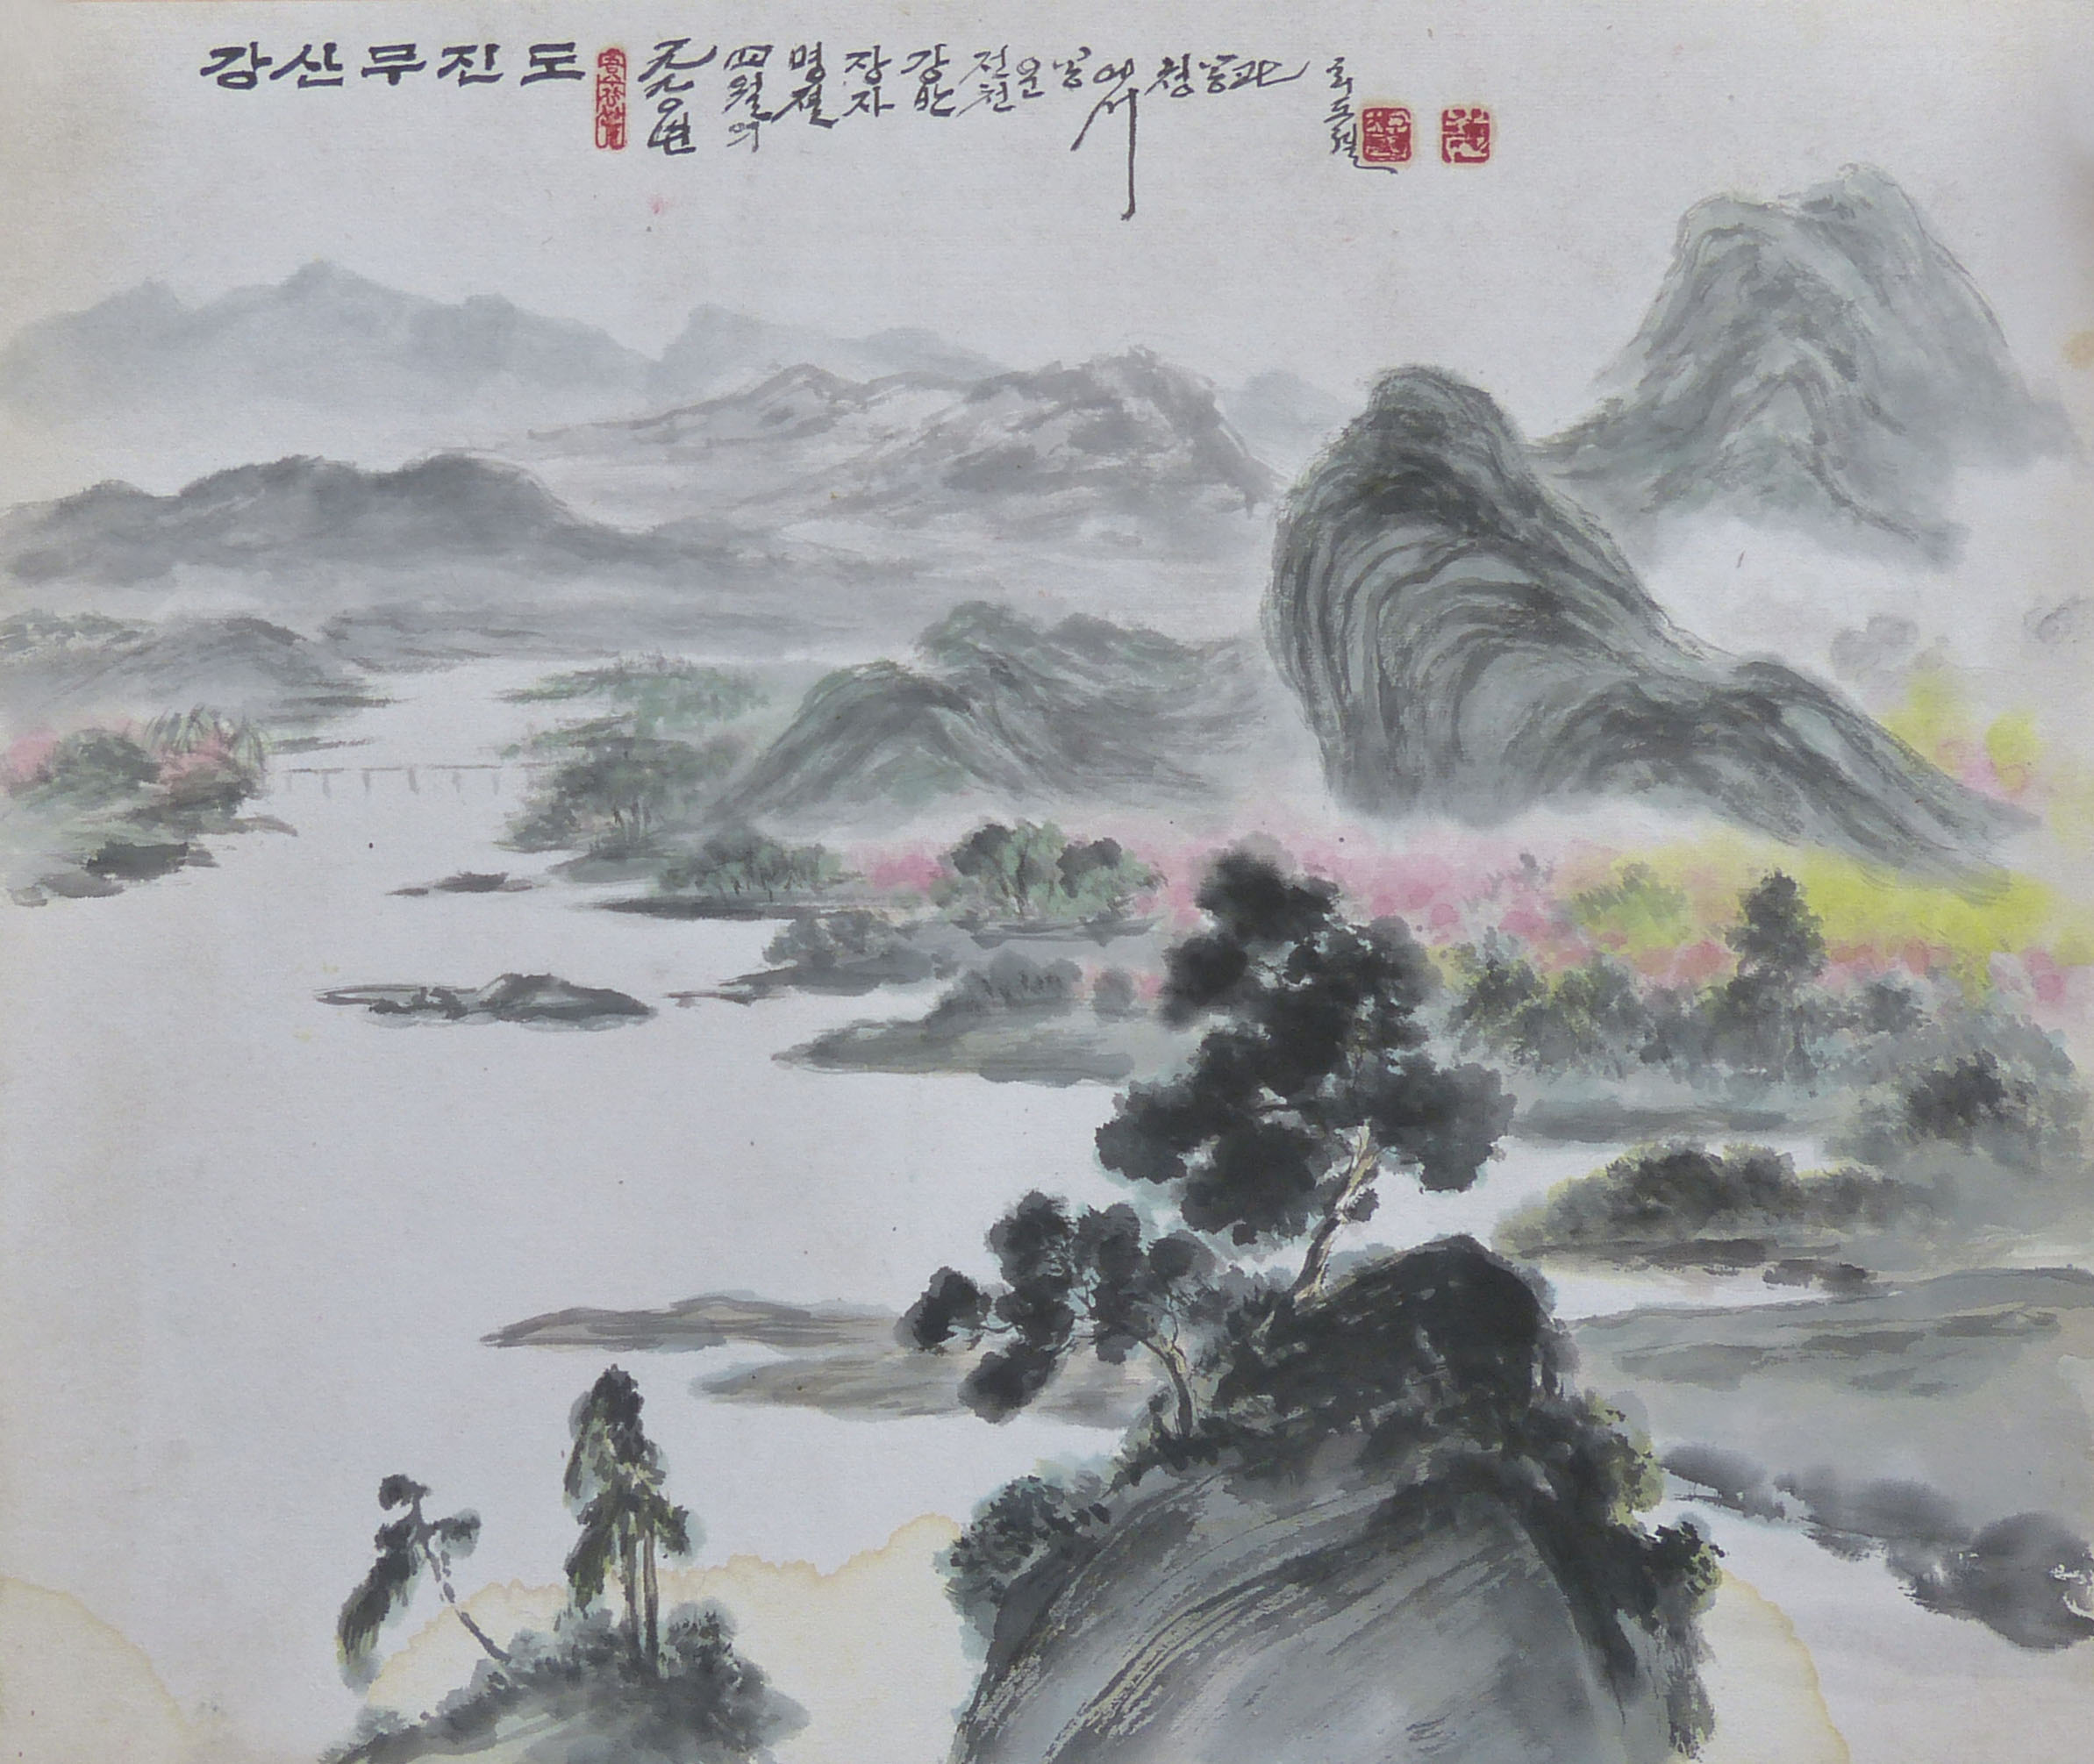 【朝鲜老画】崔道烈 江山无尽图 1990年 45 x 37.5cm